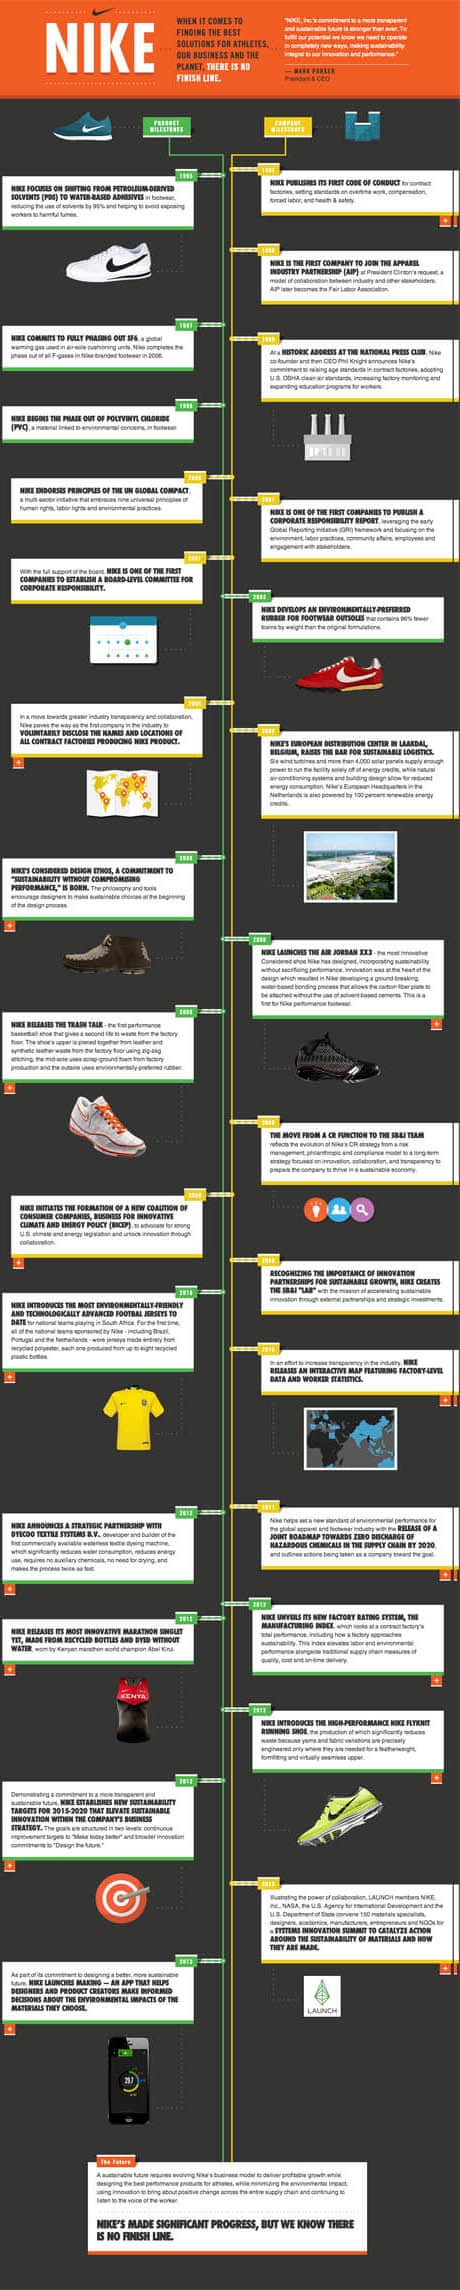 Timeline of Nike